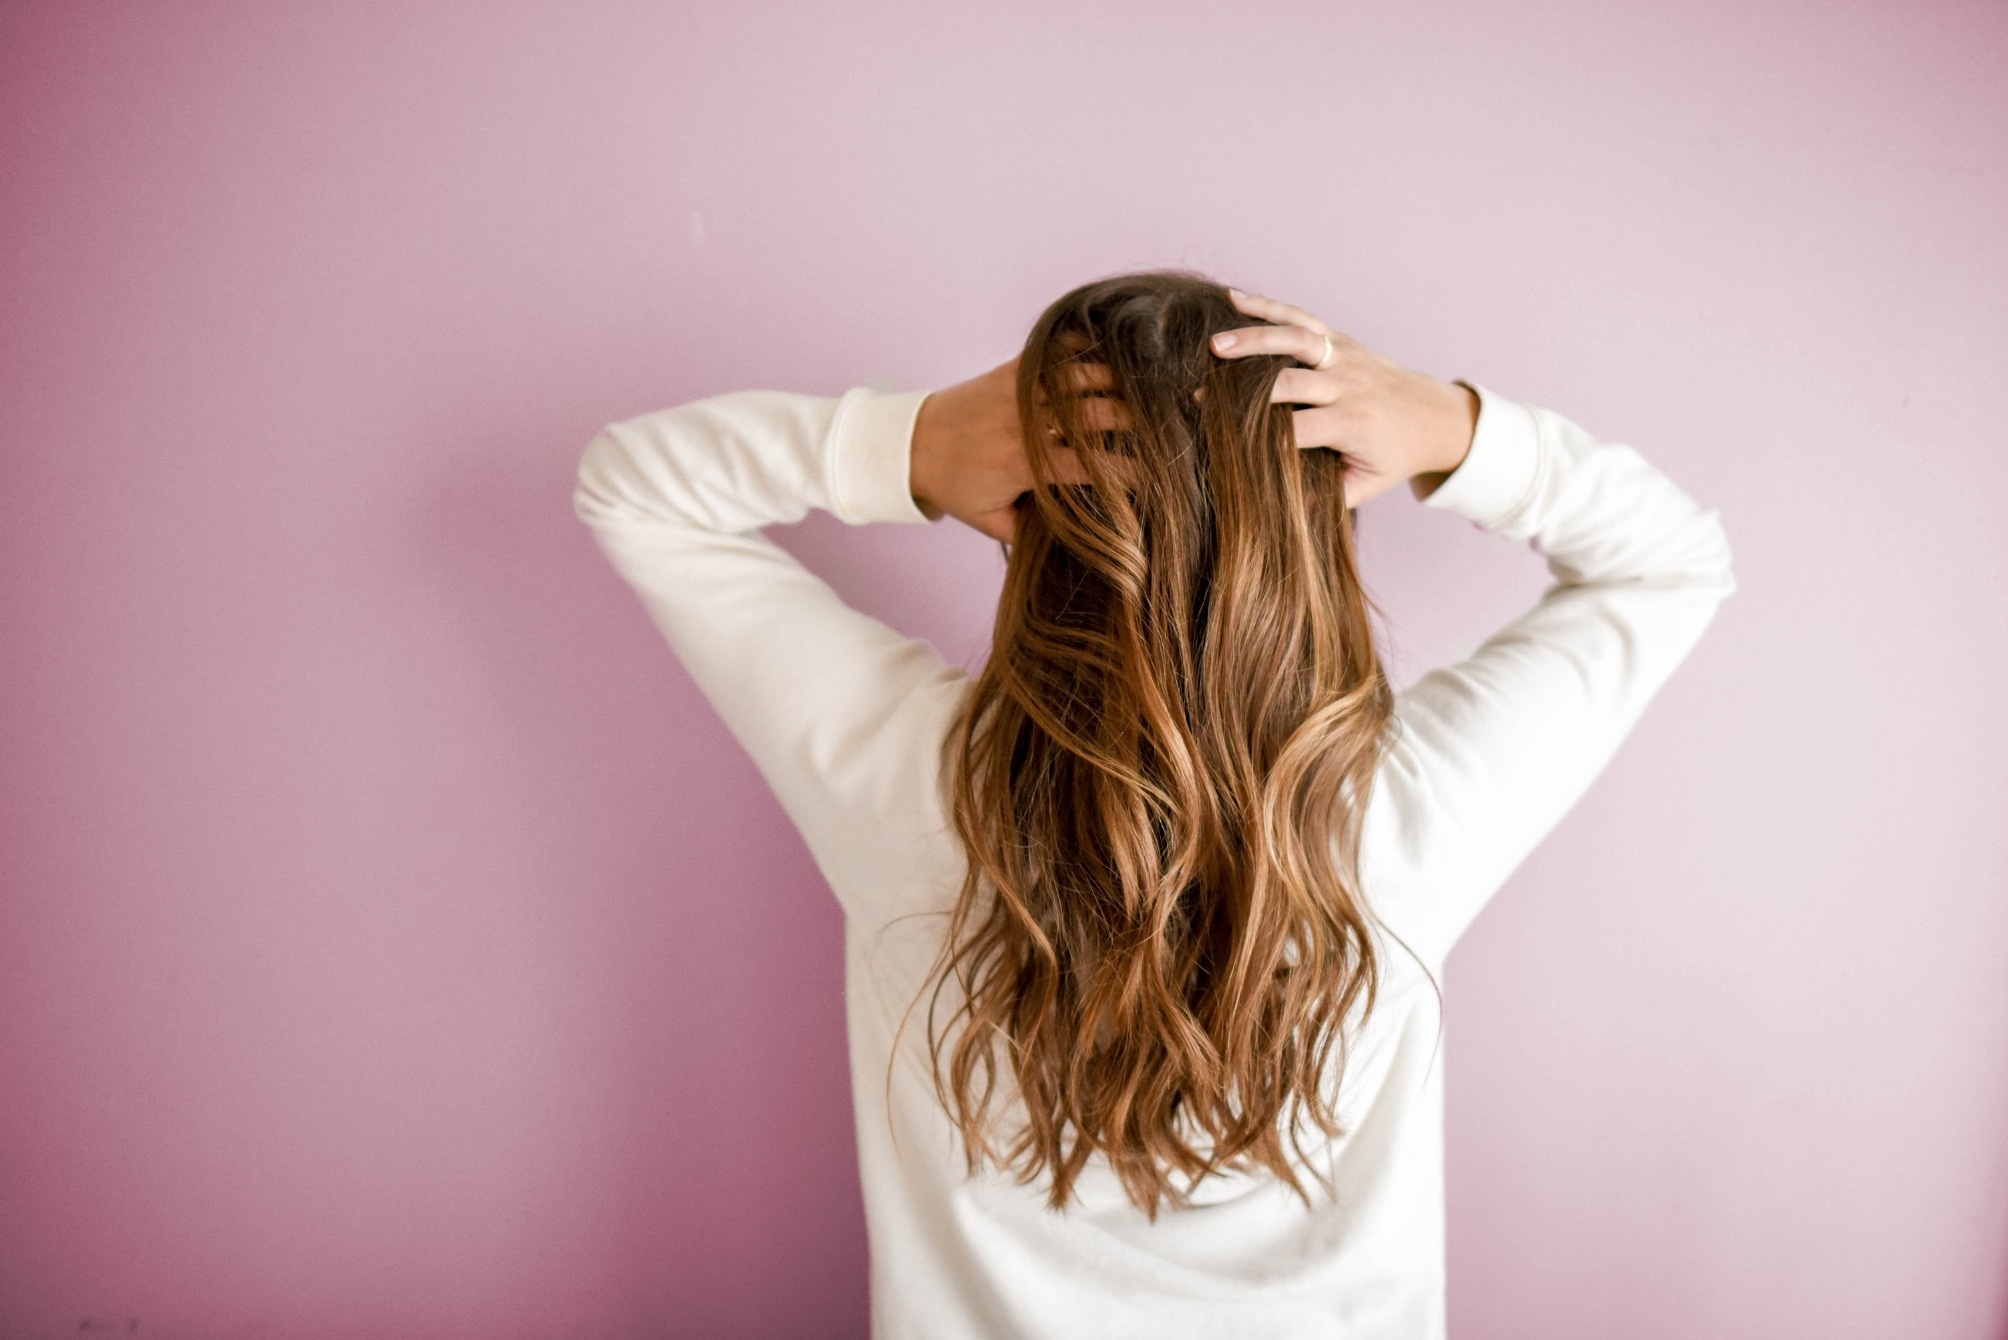 canvas kraai Verward zijn Alles wat je moet weten over shampoo | ANVY.nl - ANVY